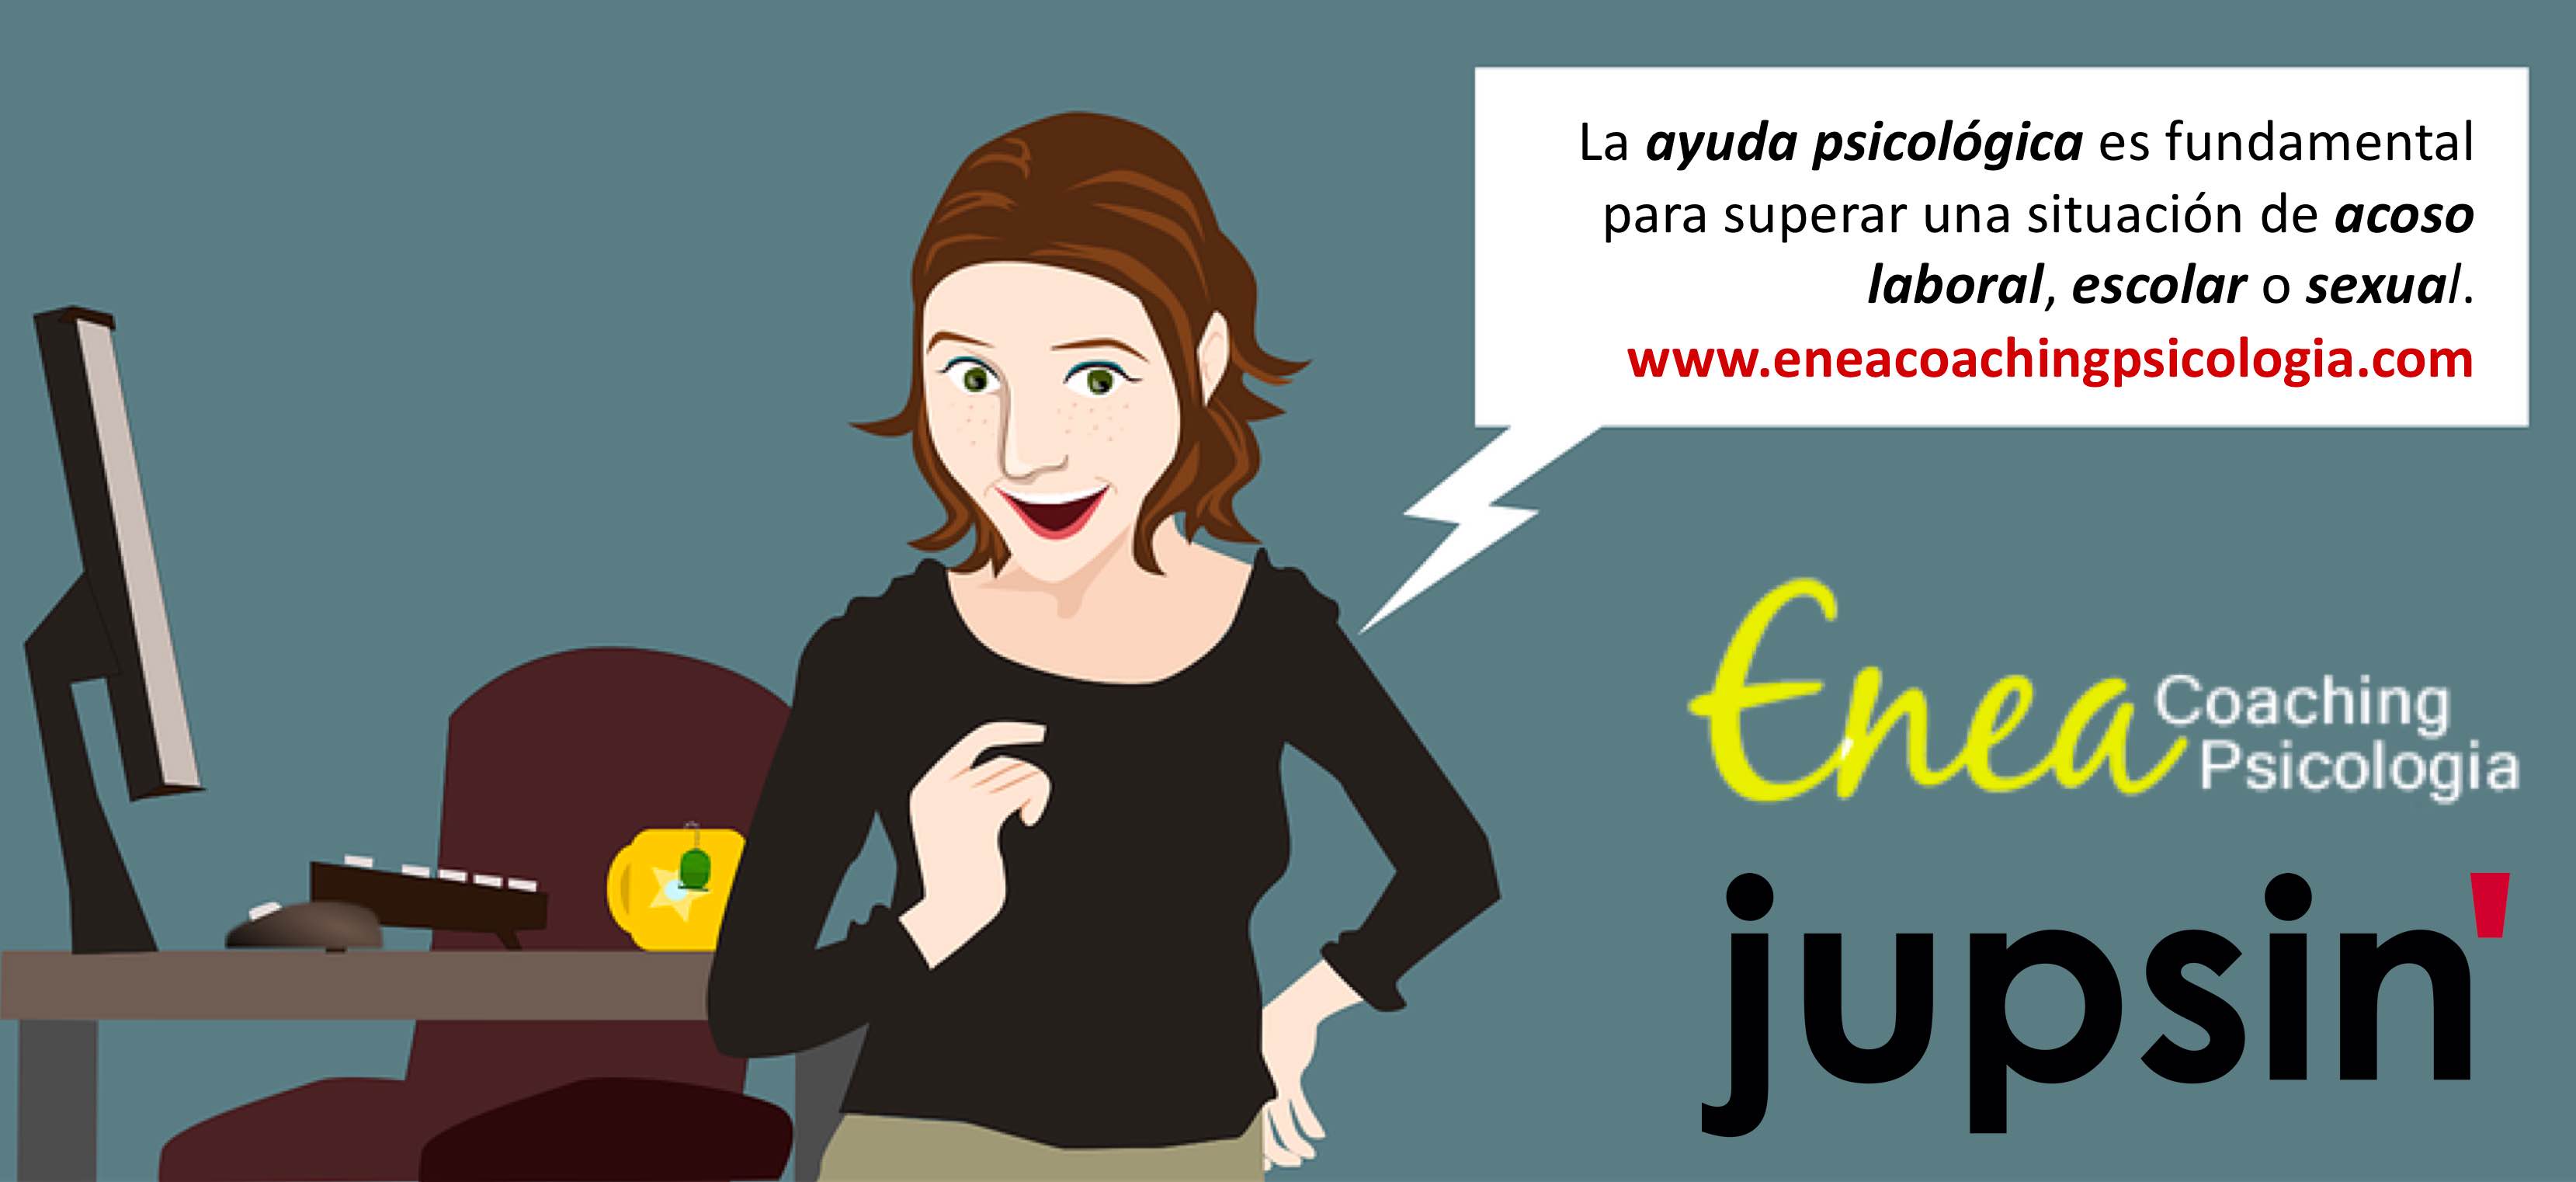 Enea Coaching Psicología, Elena Rubio, jupsin.com